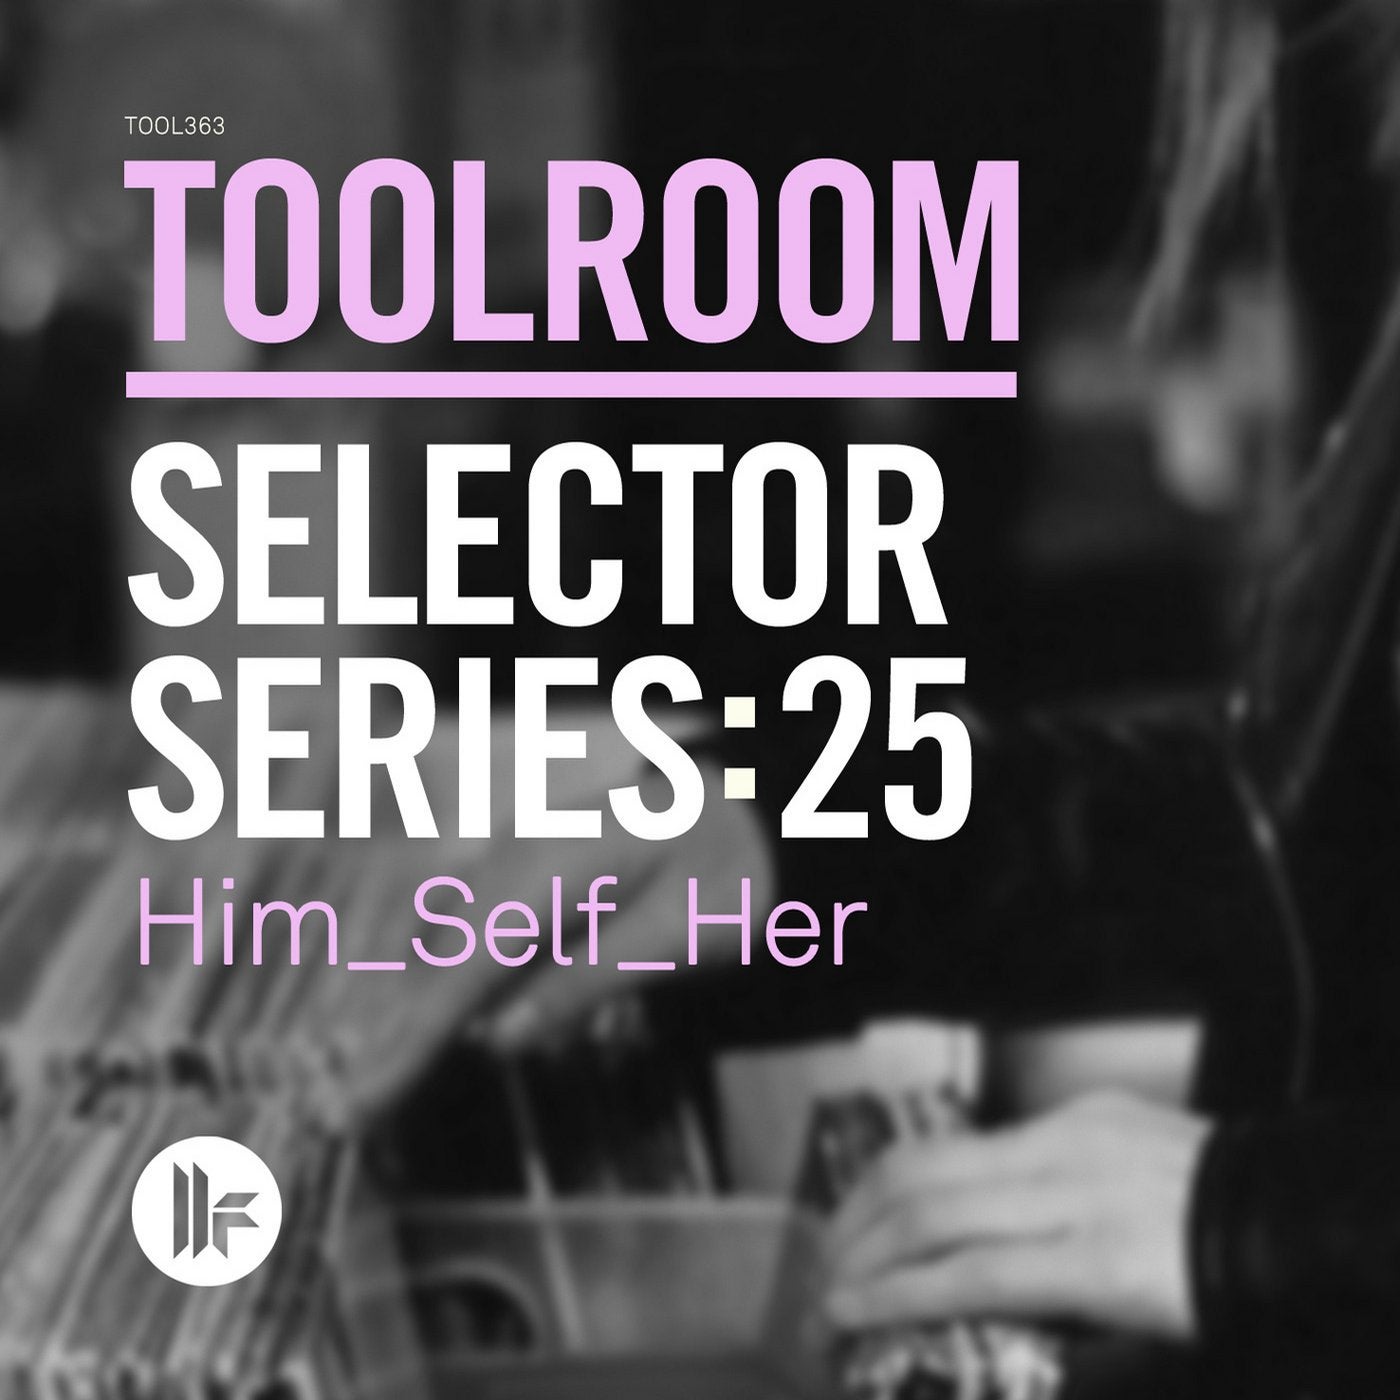 Toolroom Selector Series: 25 Him_Self_Her